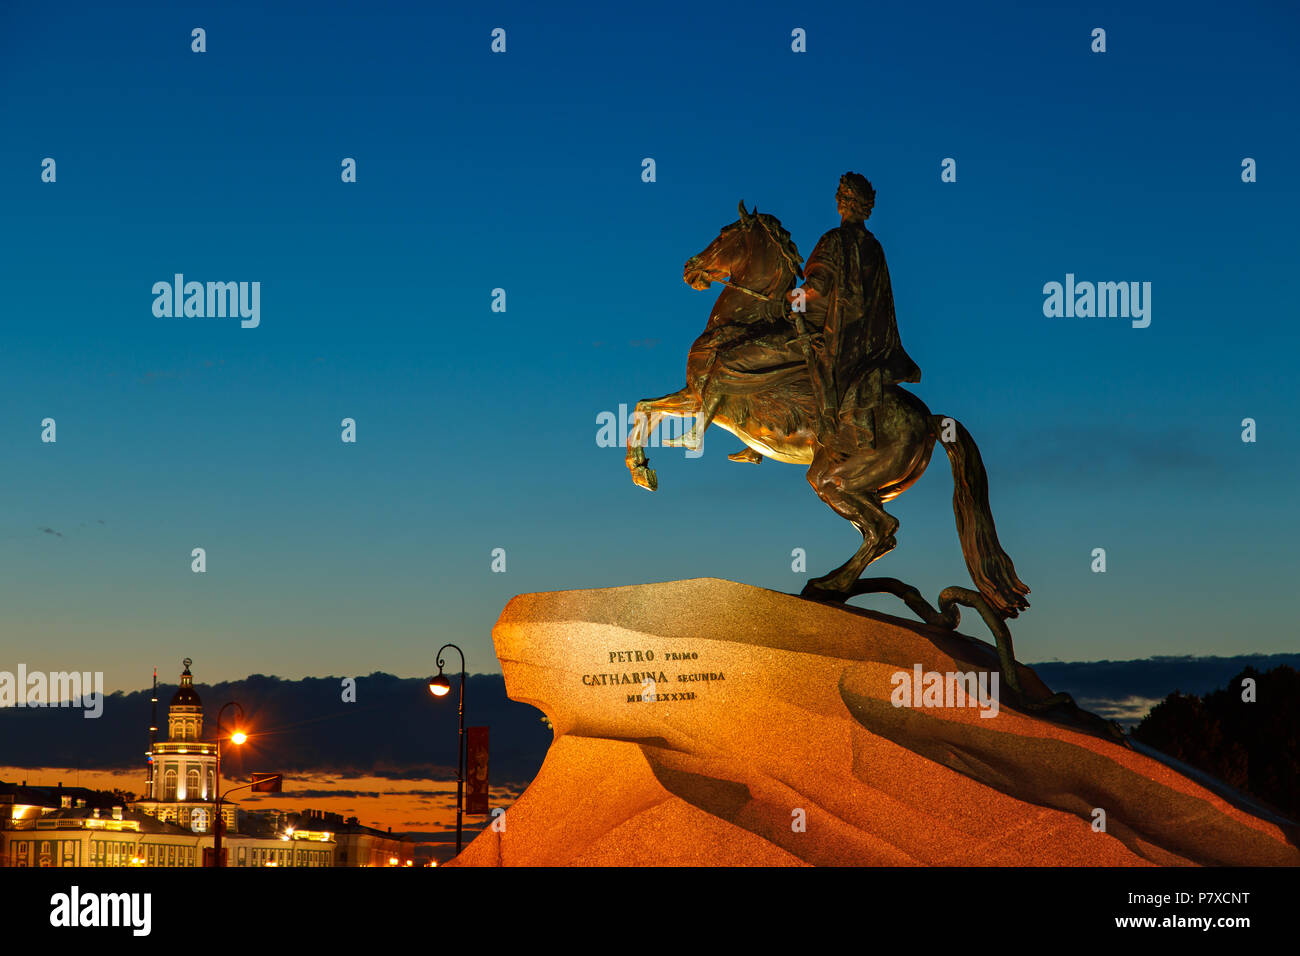 Il Cavaliere di bronzo - statua equestre di Pietro il Grande. Uno dei simboli di San Pietroburgo, notte bianca. Foto Stock